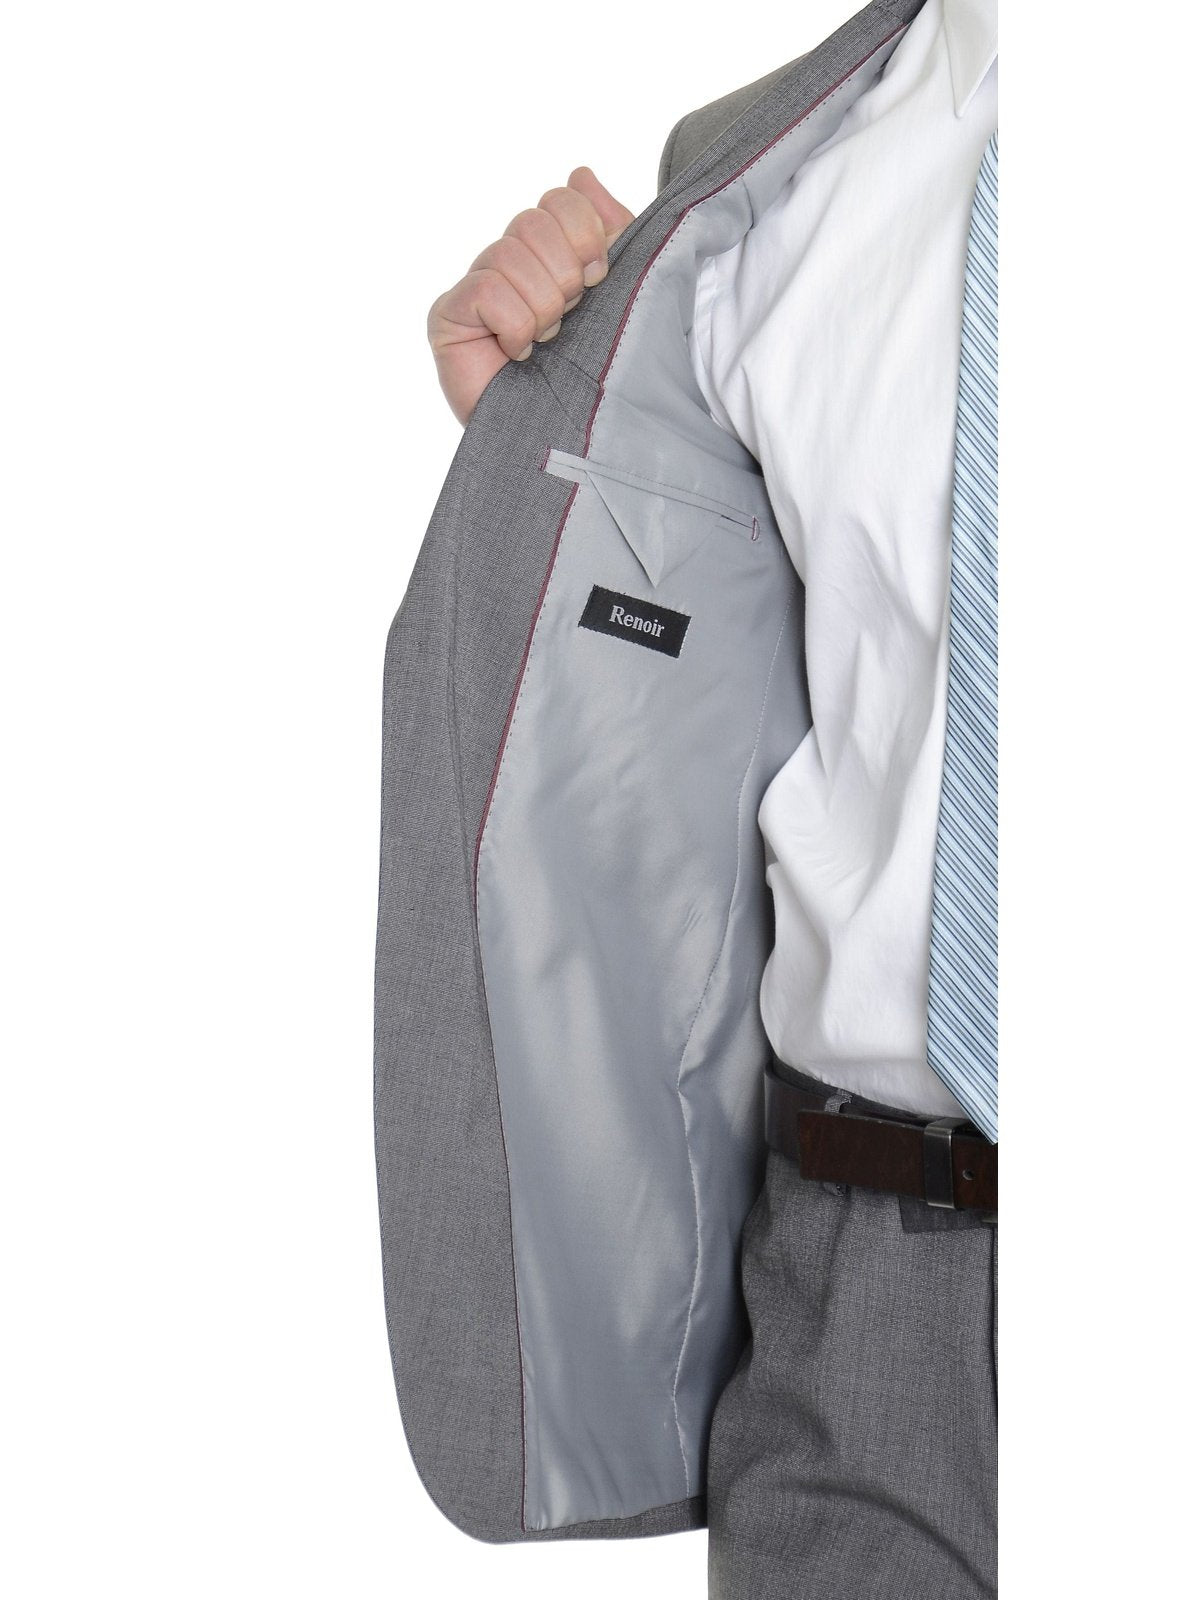 Raphael Sale Suits Raphael Semi Solid Medium Gray Tic Weave Two Button Suit